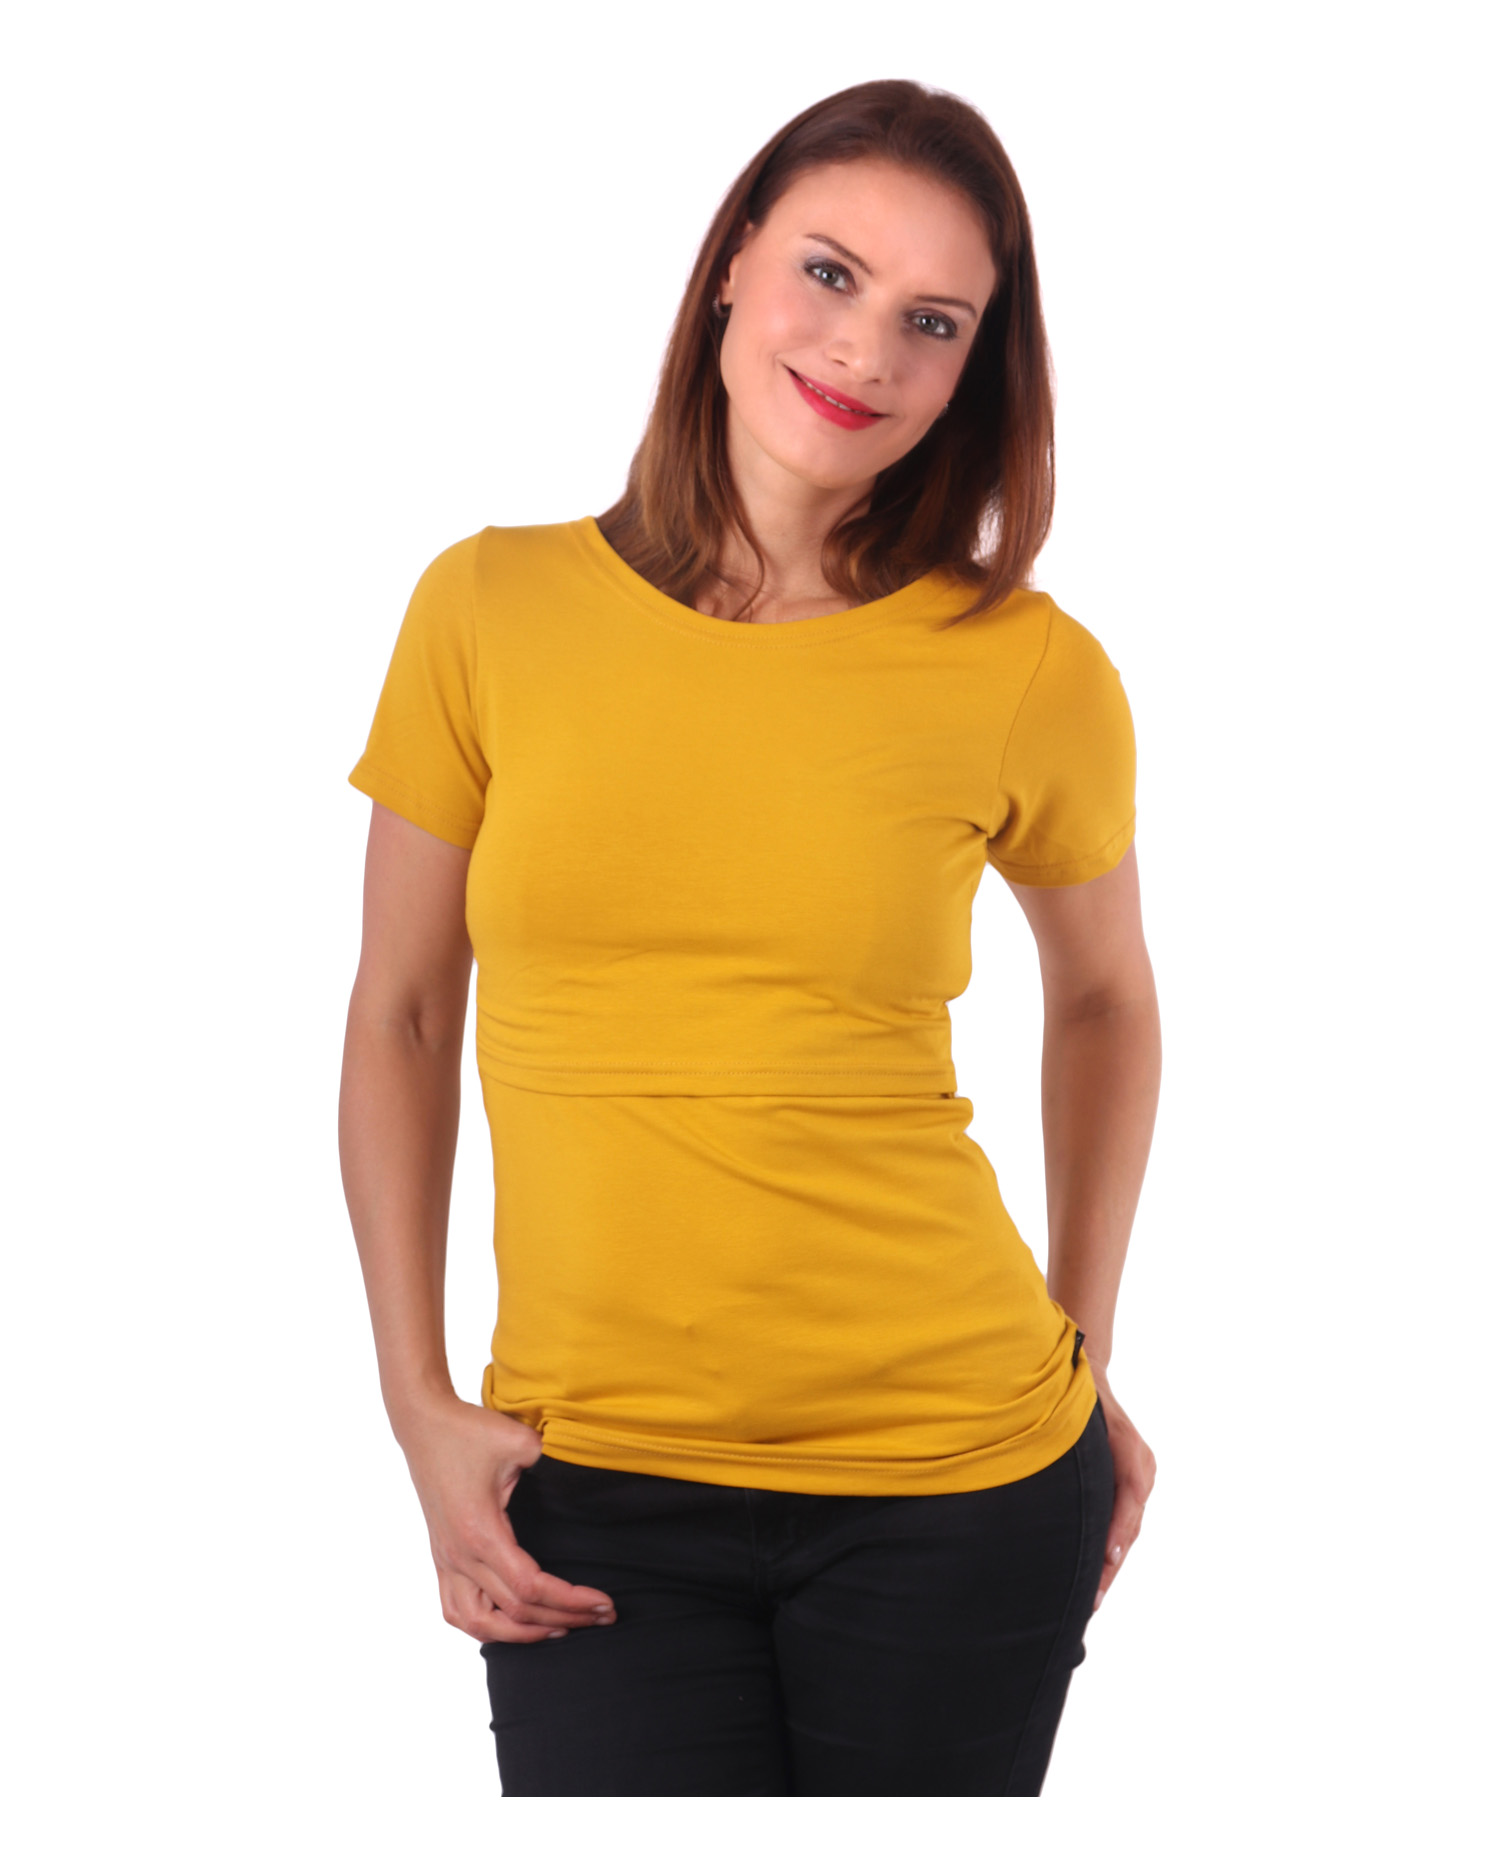 Breast-feeding T-shirt Lena, short sleeves, mustard